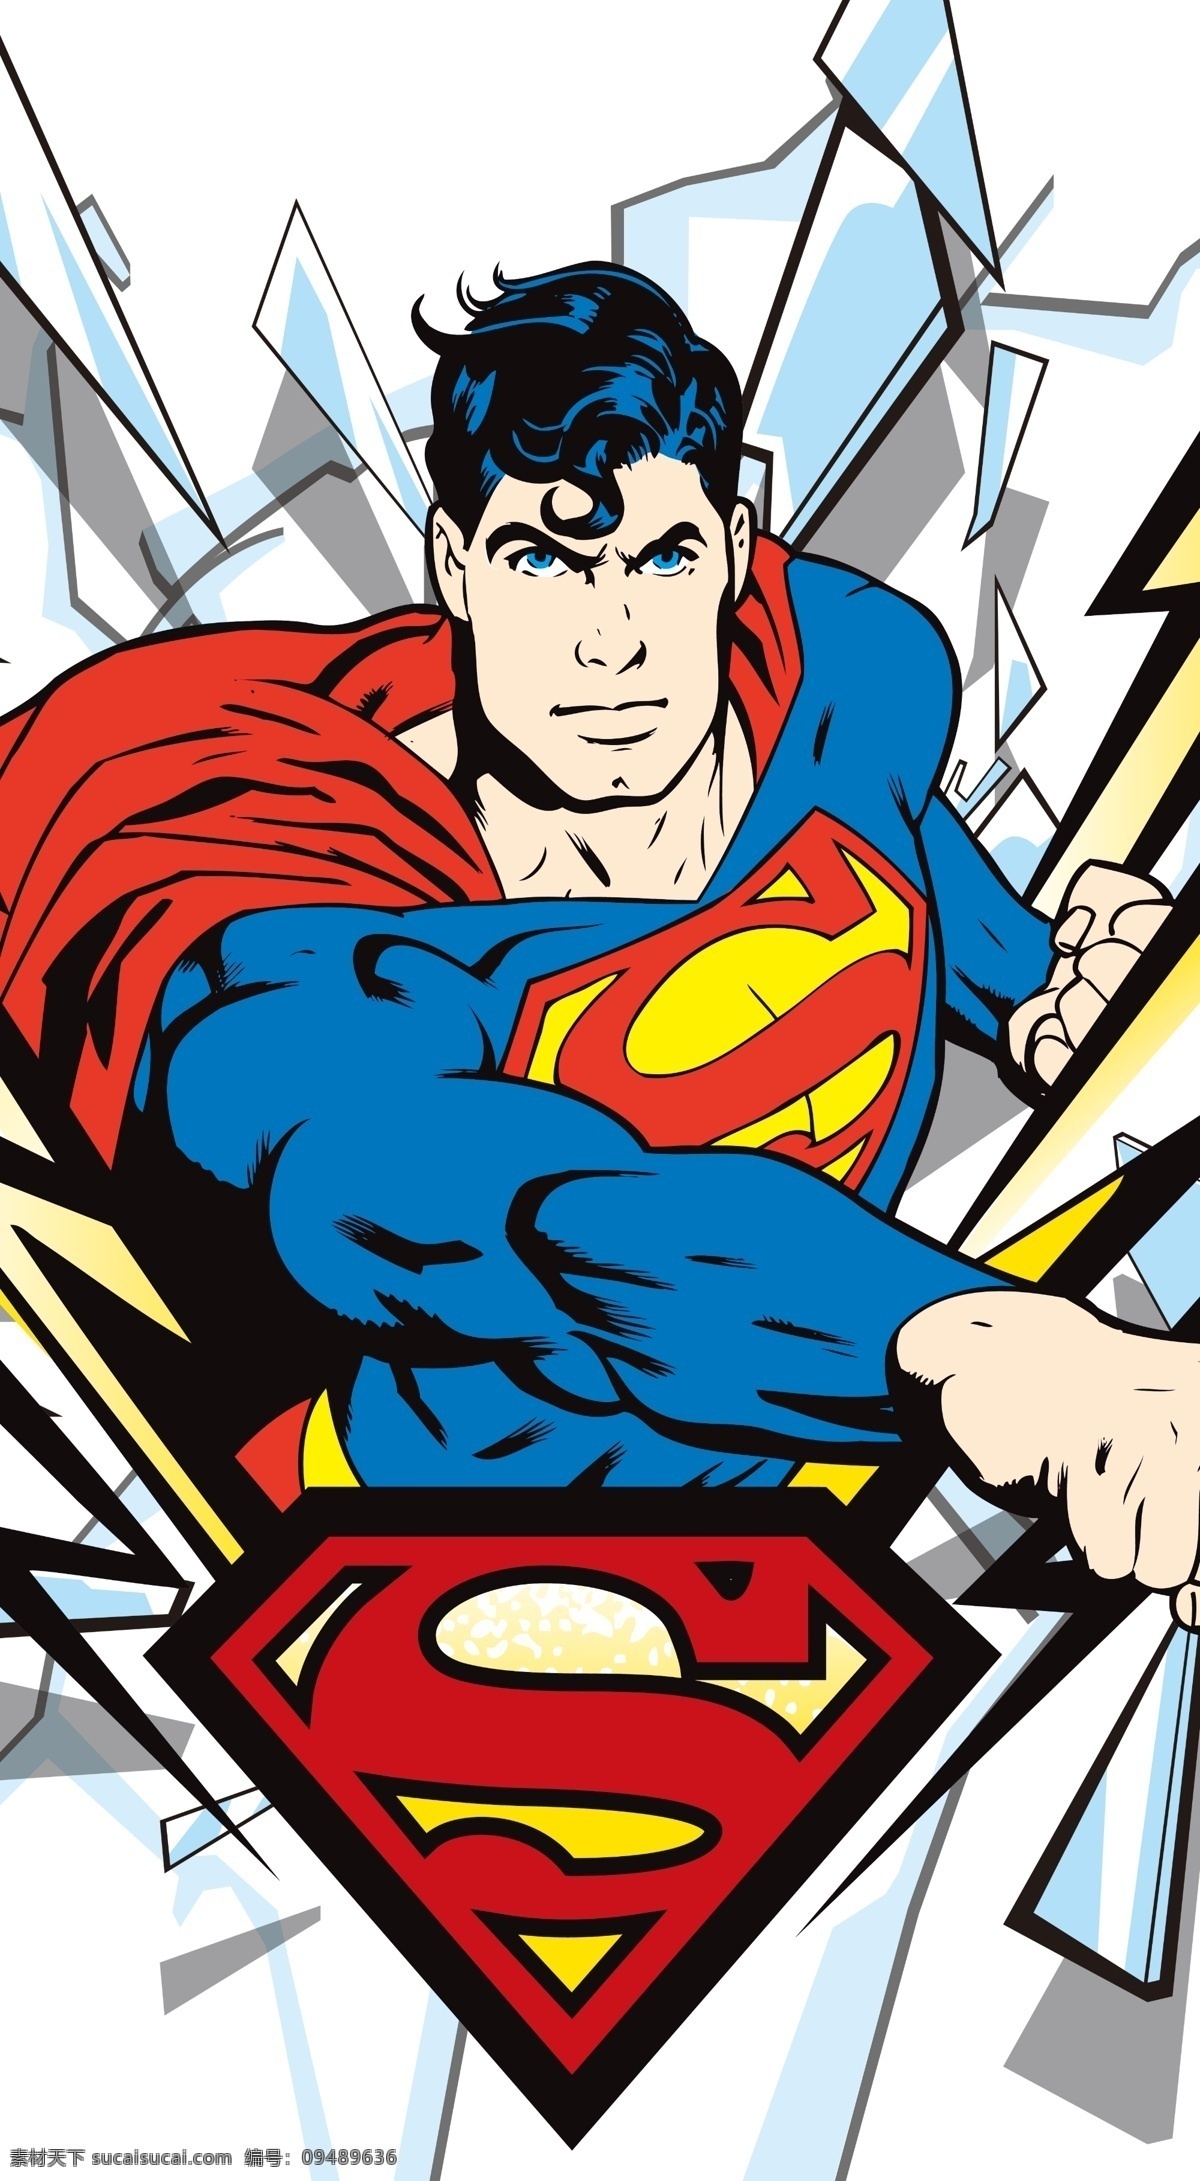 超人 superman 蝙蝠侠 batman 闪电侠 flash 华纳 dc漫画 超级英雄 英雄联盟 卡通形象 其他人物 矢量人物 卡通 分图层 复仇者 复仇者联盟 分层 源文件